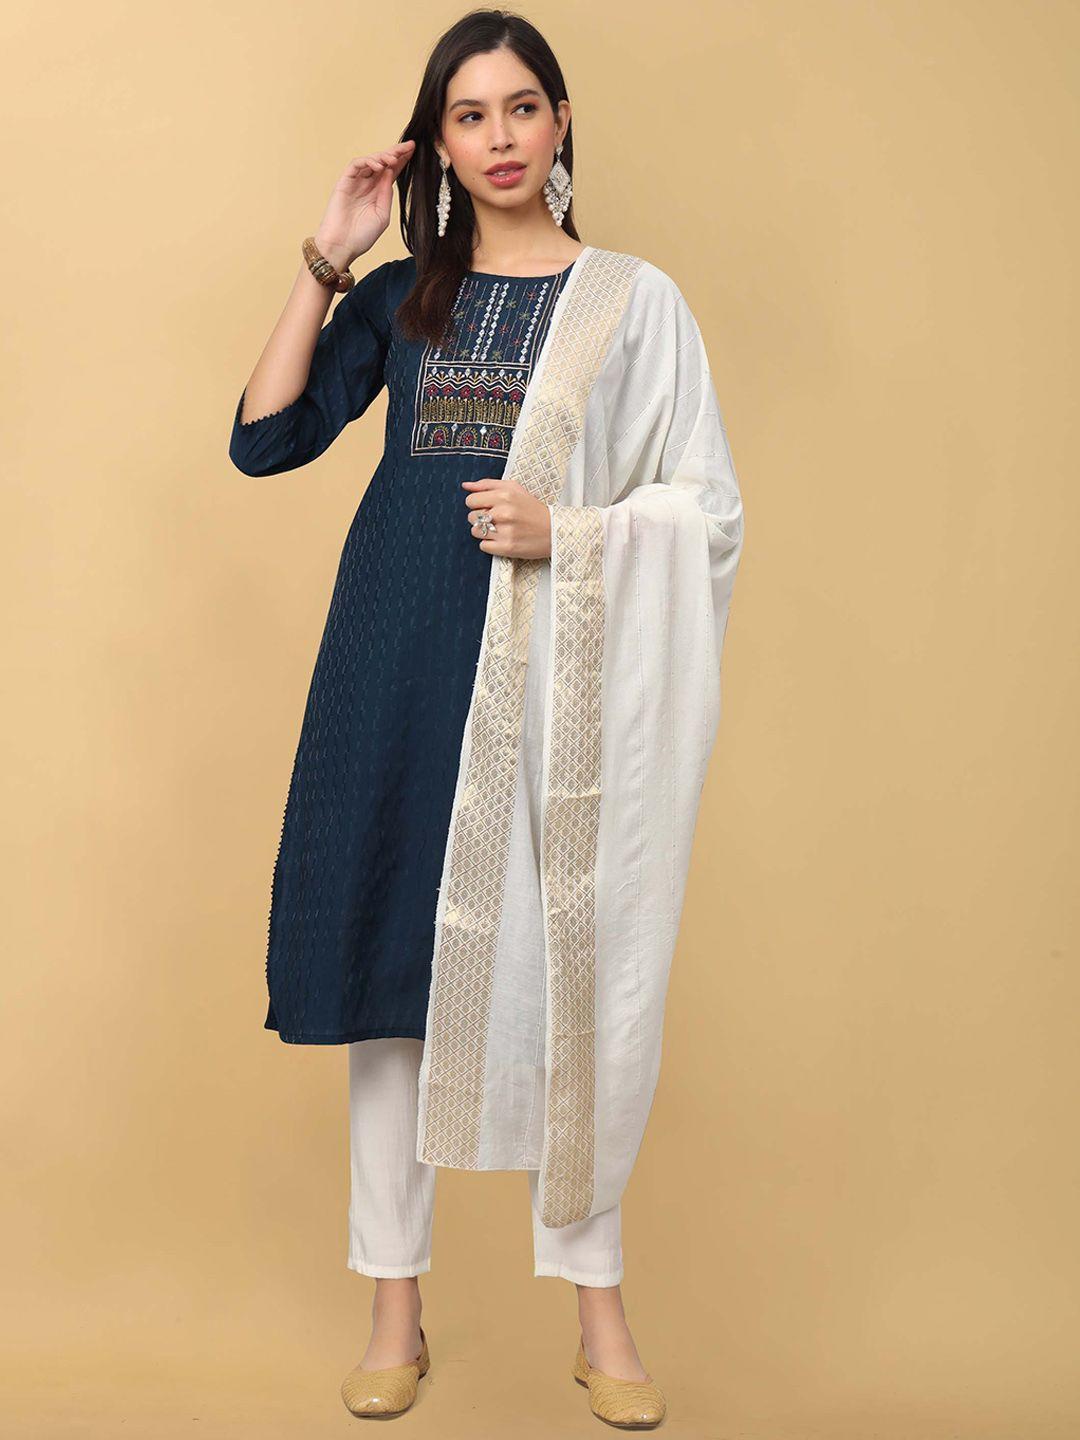 punrwa floral printed yoke design round neck kantha work raw silk kurta trousers & dupatta